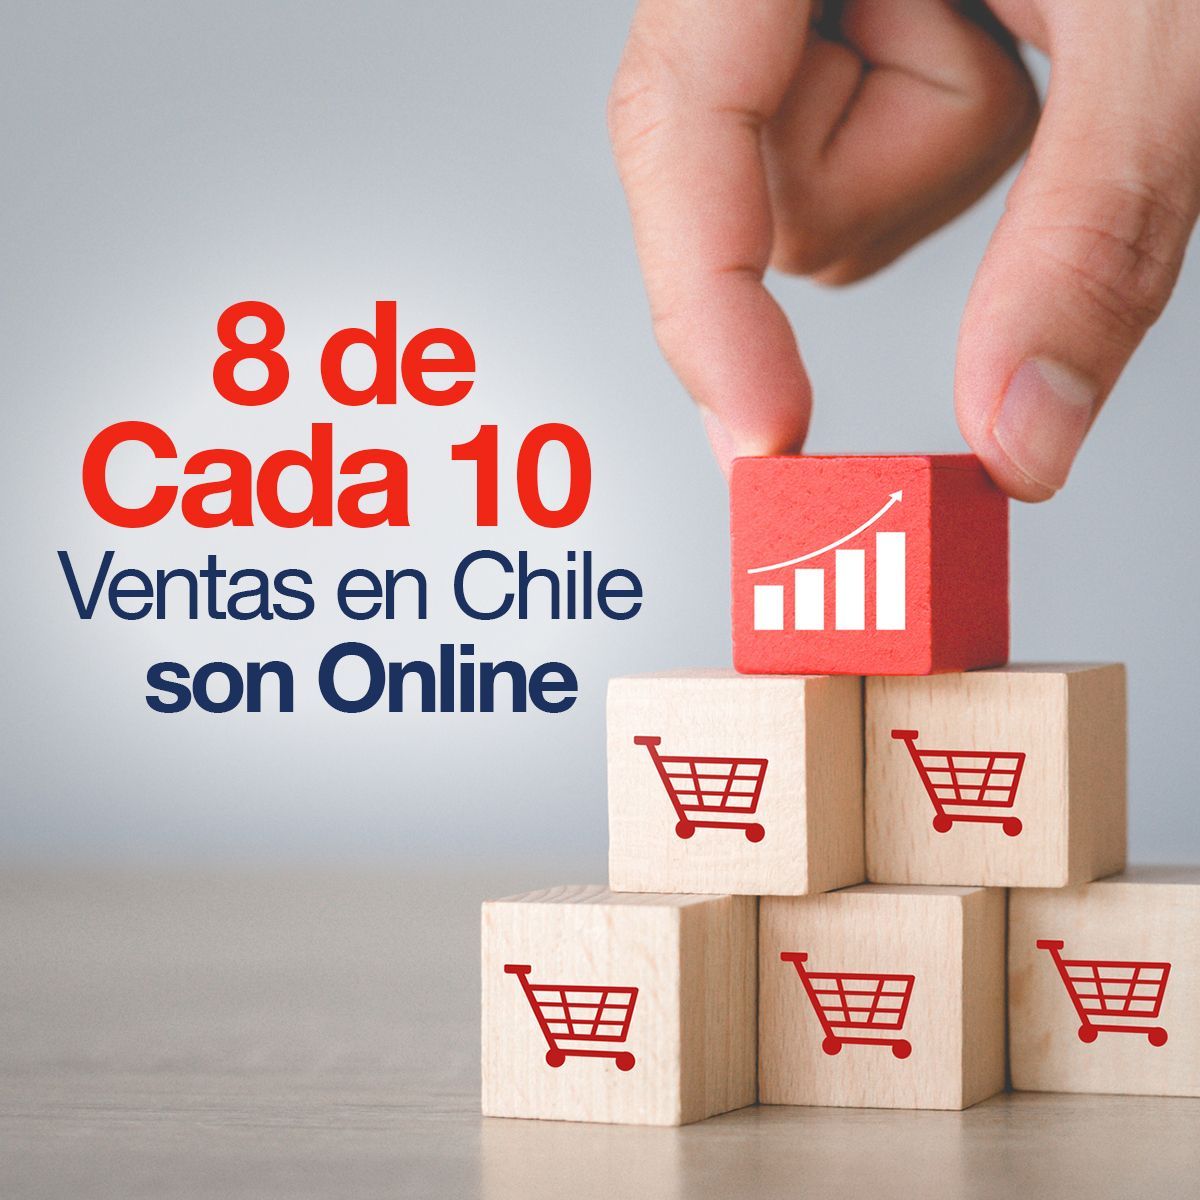 8 de Cada 10 Ventas en Chile son Online